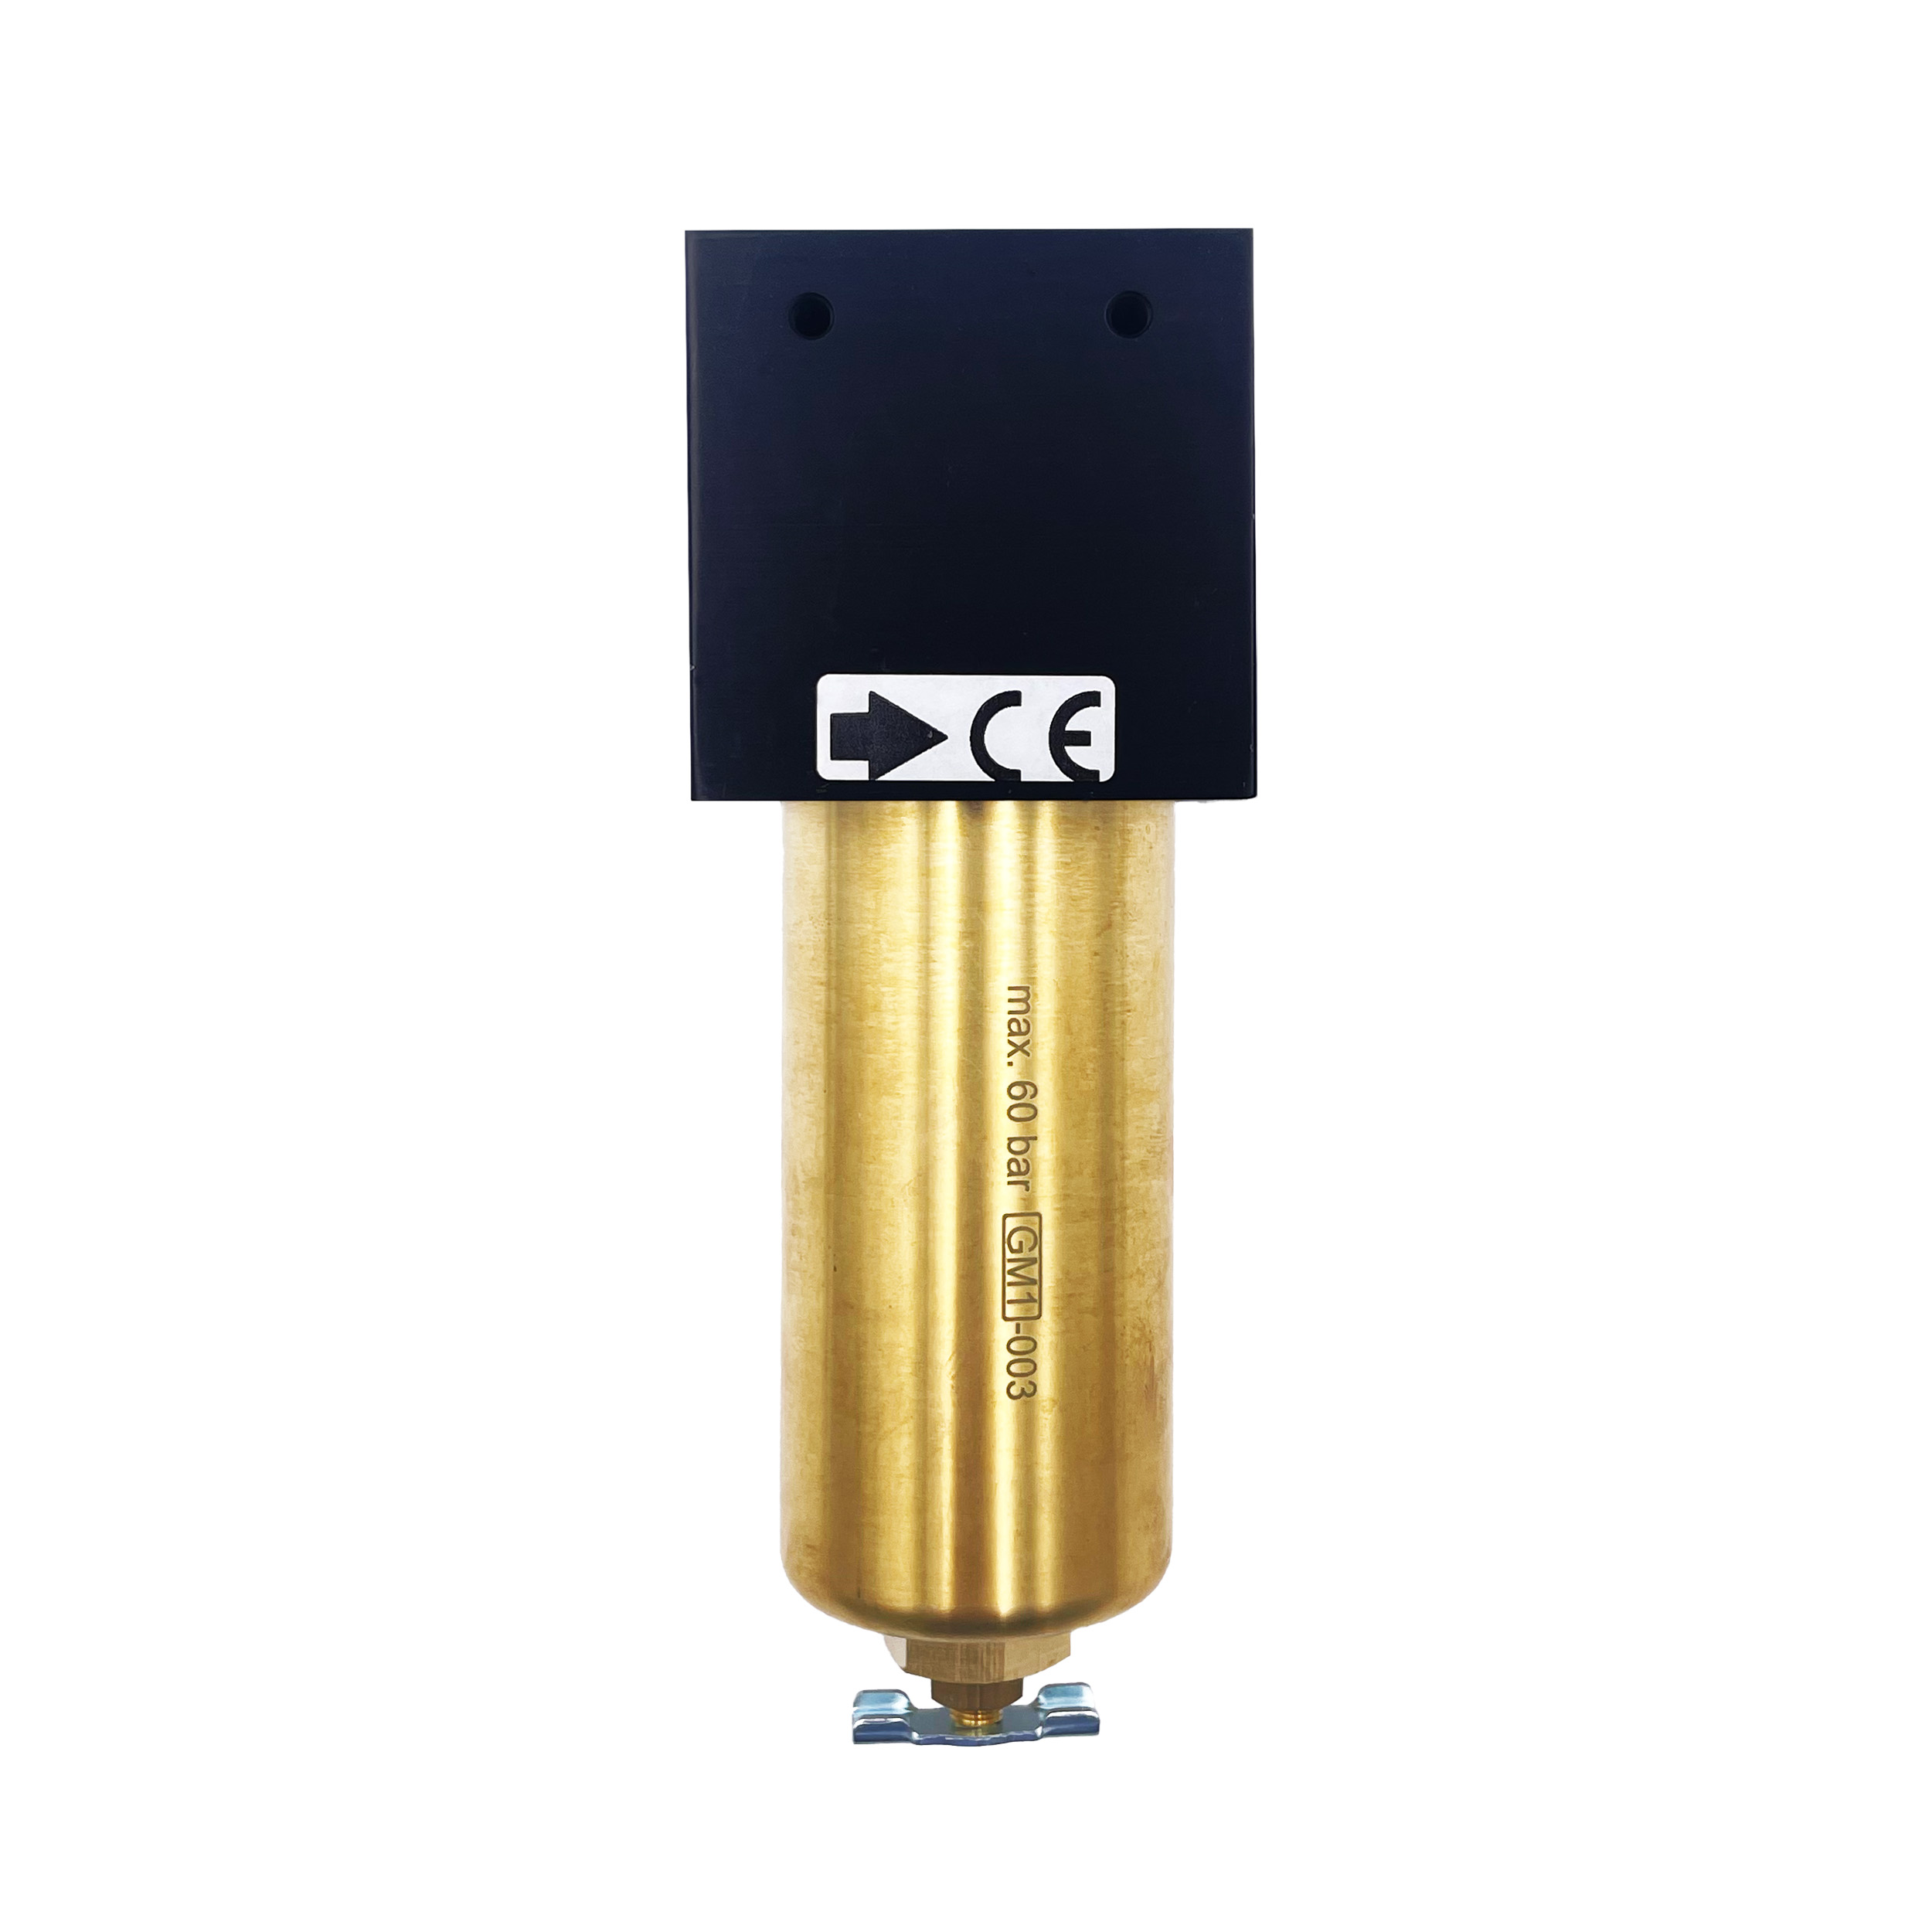 Microfilter standard 60 bar, BG 40, G½, metal bowl, manual drain valve